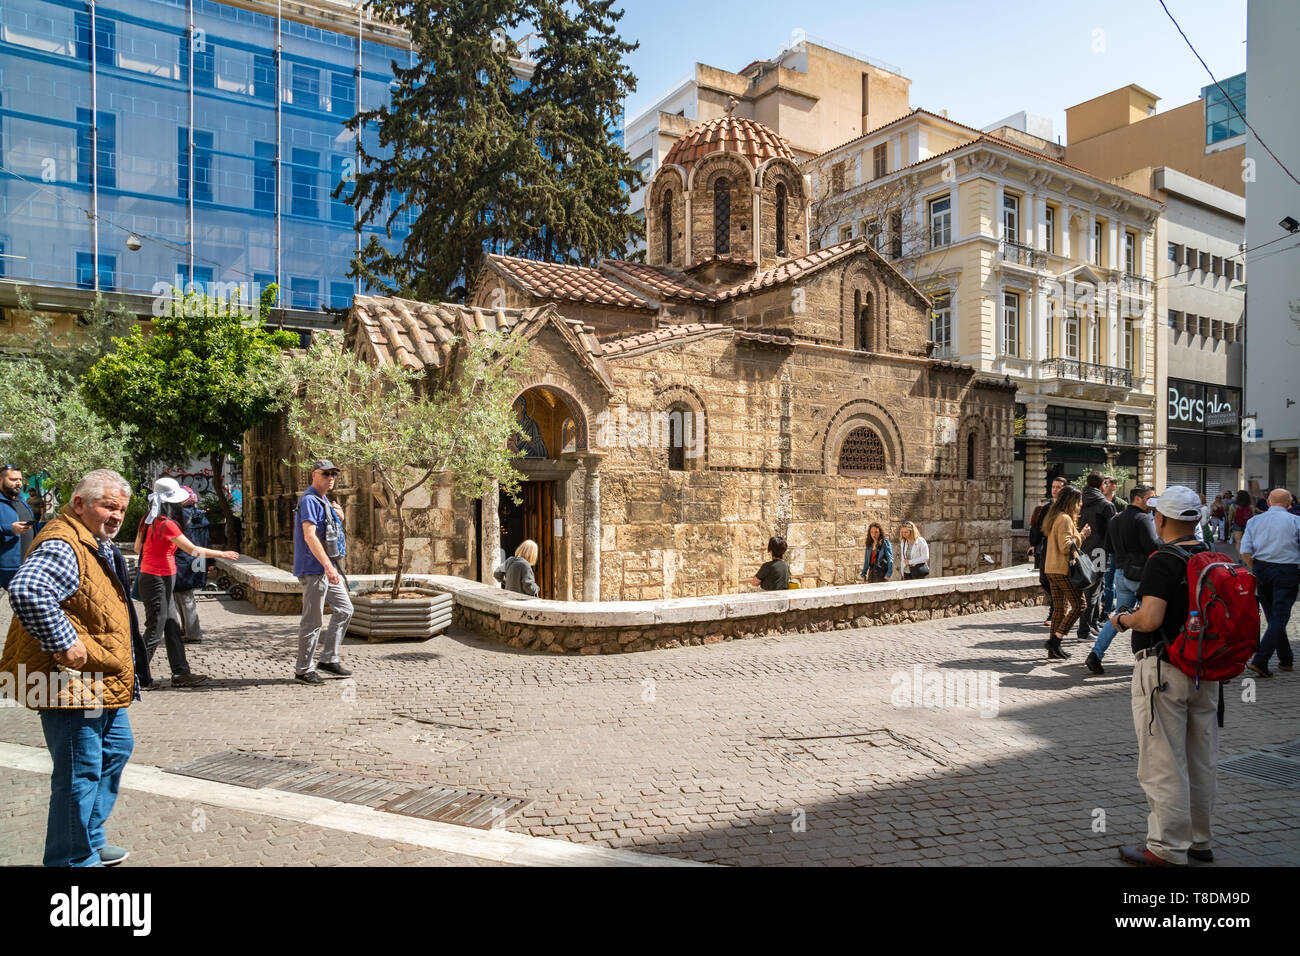 Atene, Grecia - 26.04.2019: la chiesa di Panagia Kapnikarea, la chiesa più antica di Atene, situato nel quartiere dello shopping su Ermou Street Foto Stock